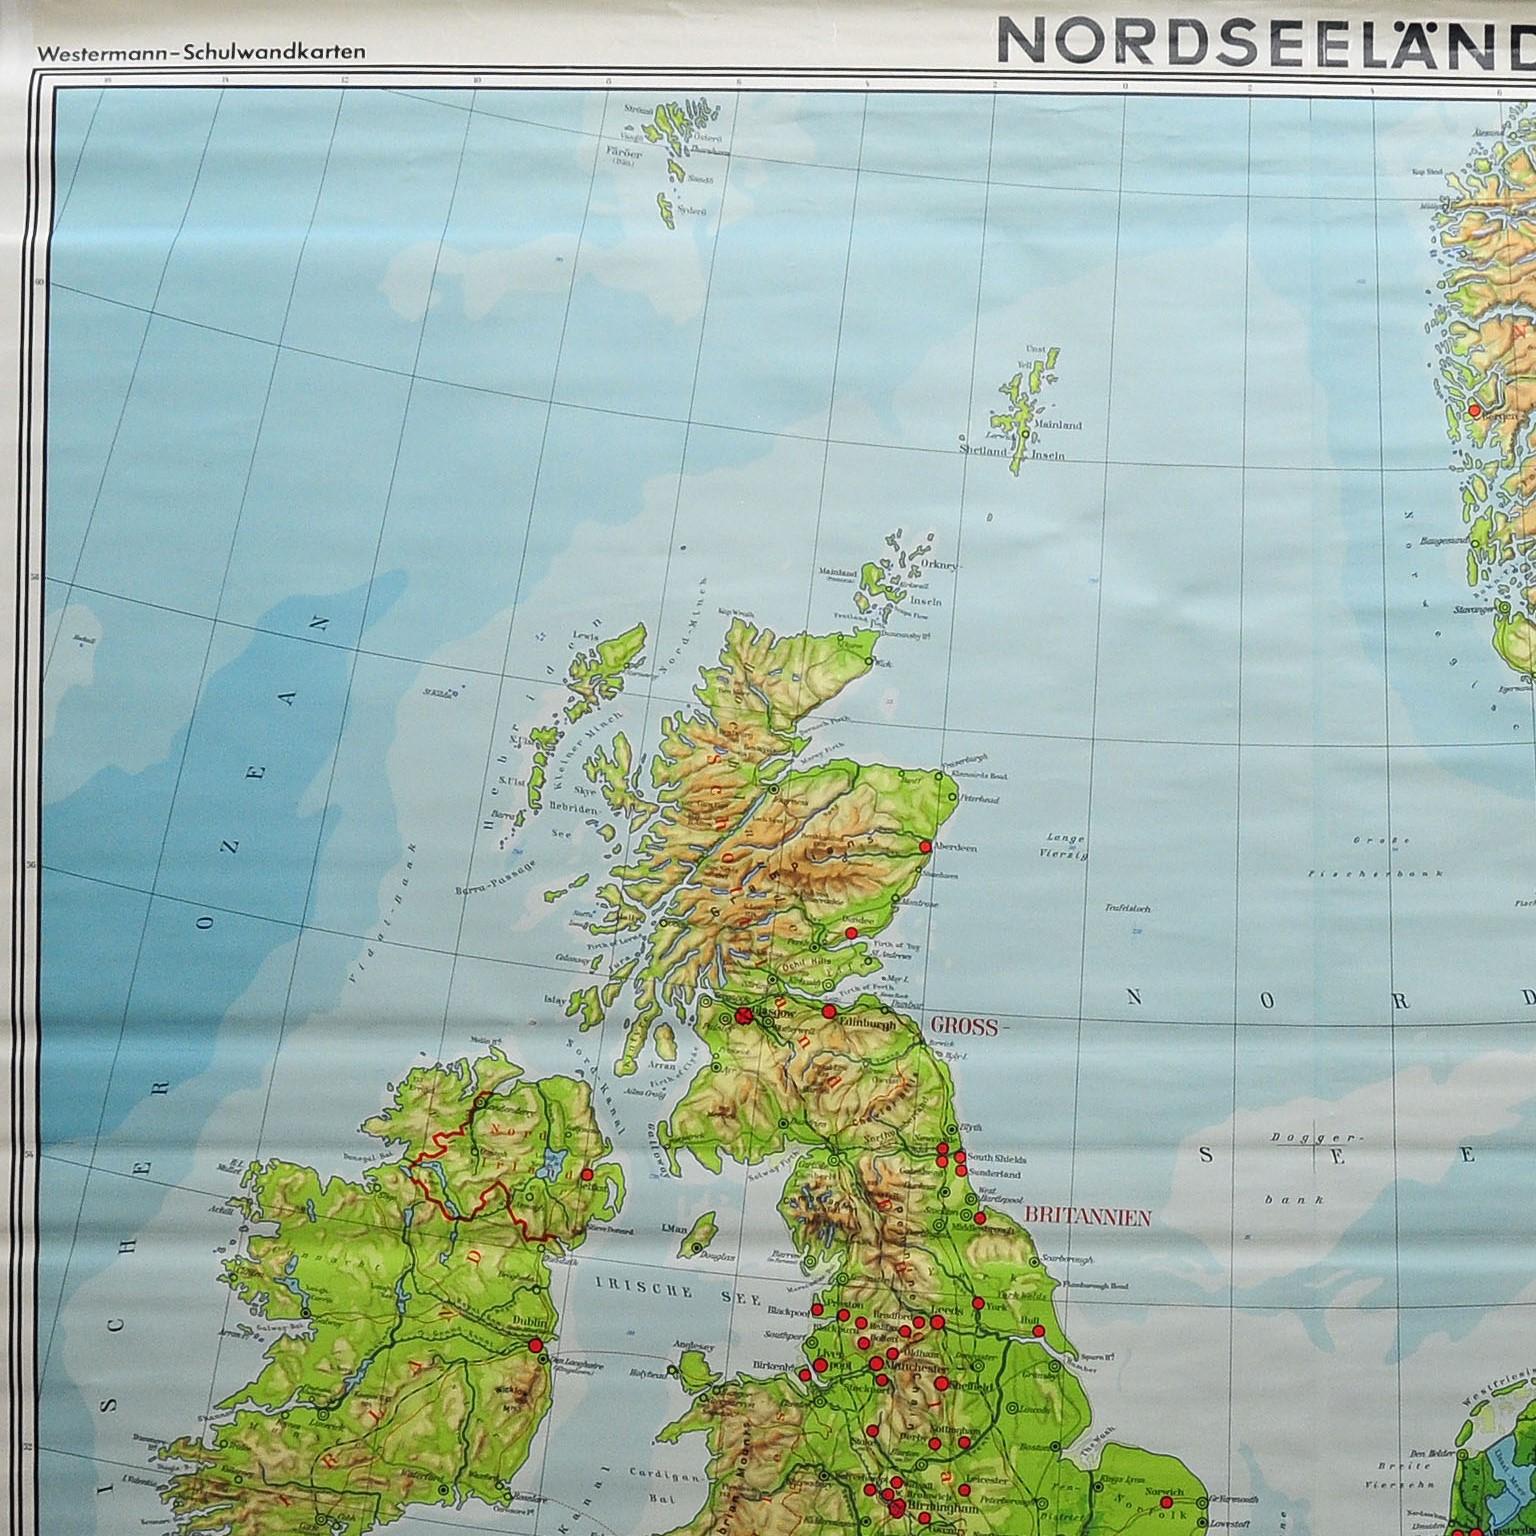 La carte murale vintage en cottagecore illustre les pays de la mer du Nord avec la Grande-Bretagne et l'Irlande, la Scandinavie (Norvège, Suède, Danemark), le nord de la France, les Pays-Bas, le nord de l'Allemagne. Un grand tableau déroulant au